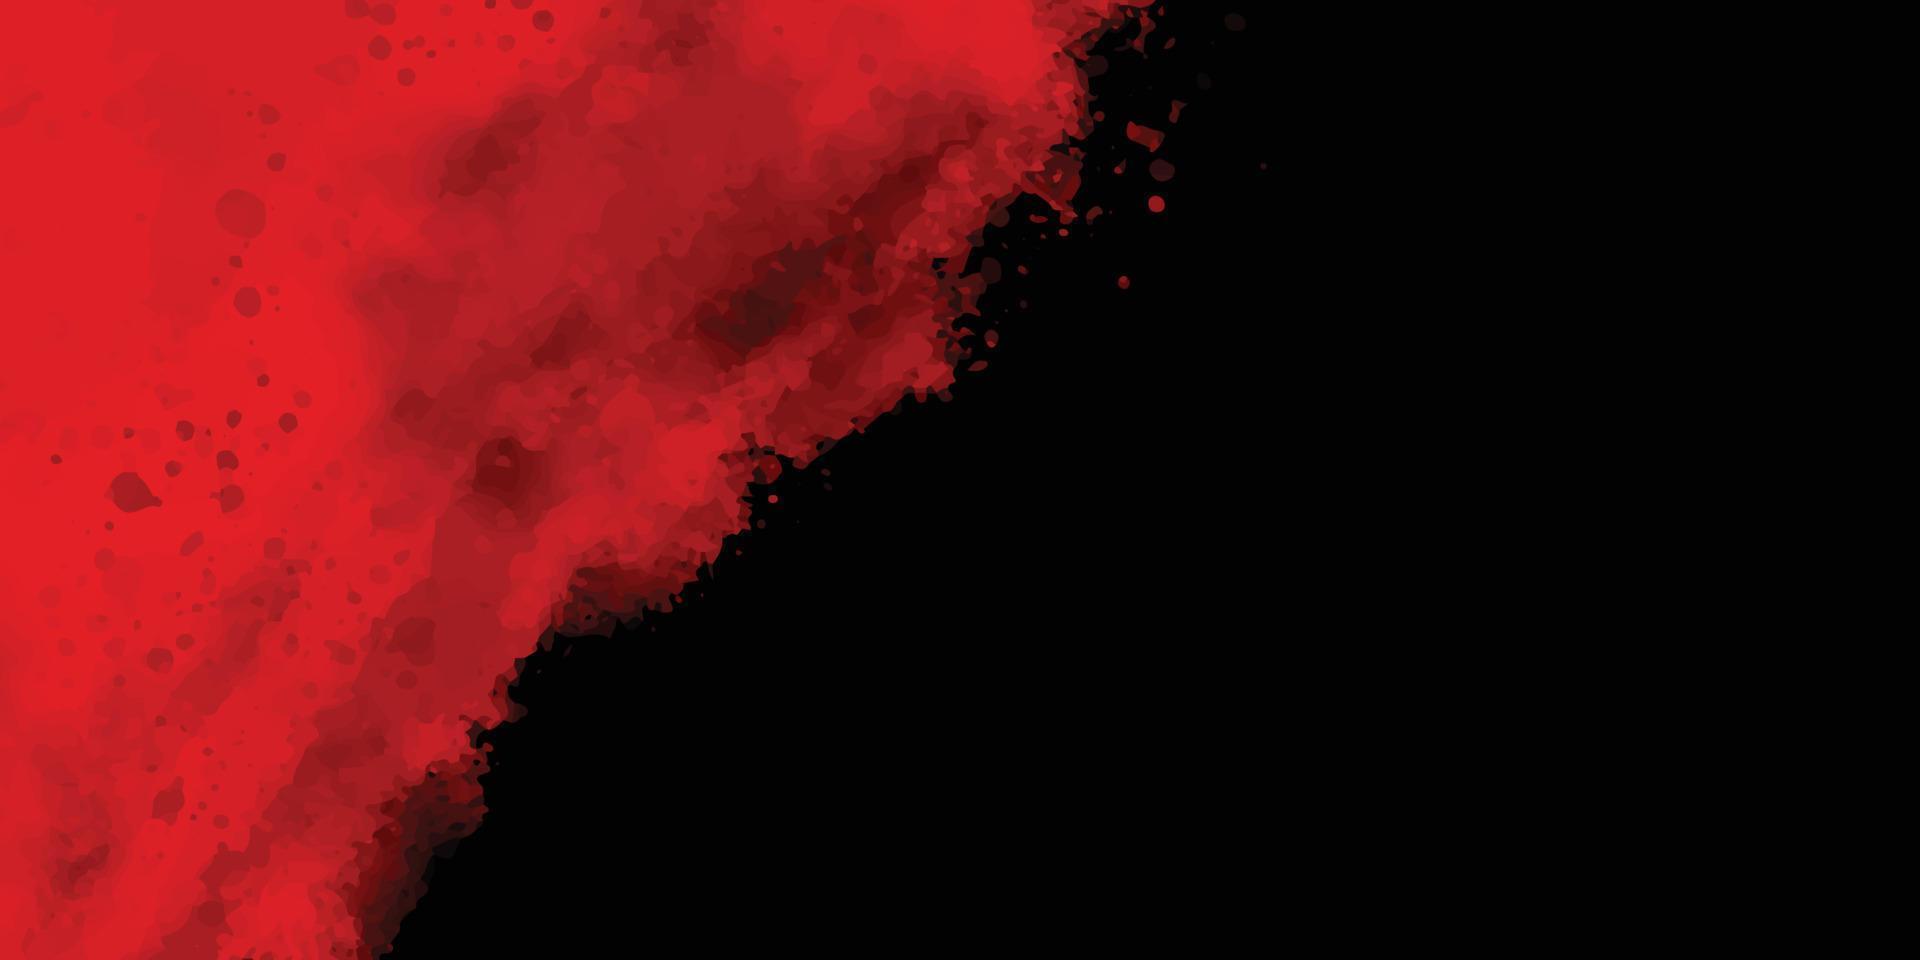 roter und schwarzer Grunge-Hintergrund mit Platz für Text, abstraktes Aquarell, rote Grunge-Hintergrundmalerei, trendiger, schöner, stilvoller, moderner roter Texturhintergrund mit Rauch, Vektor, Illustration vektor